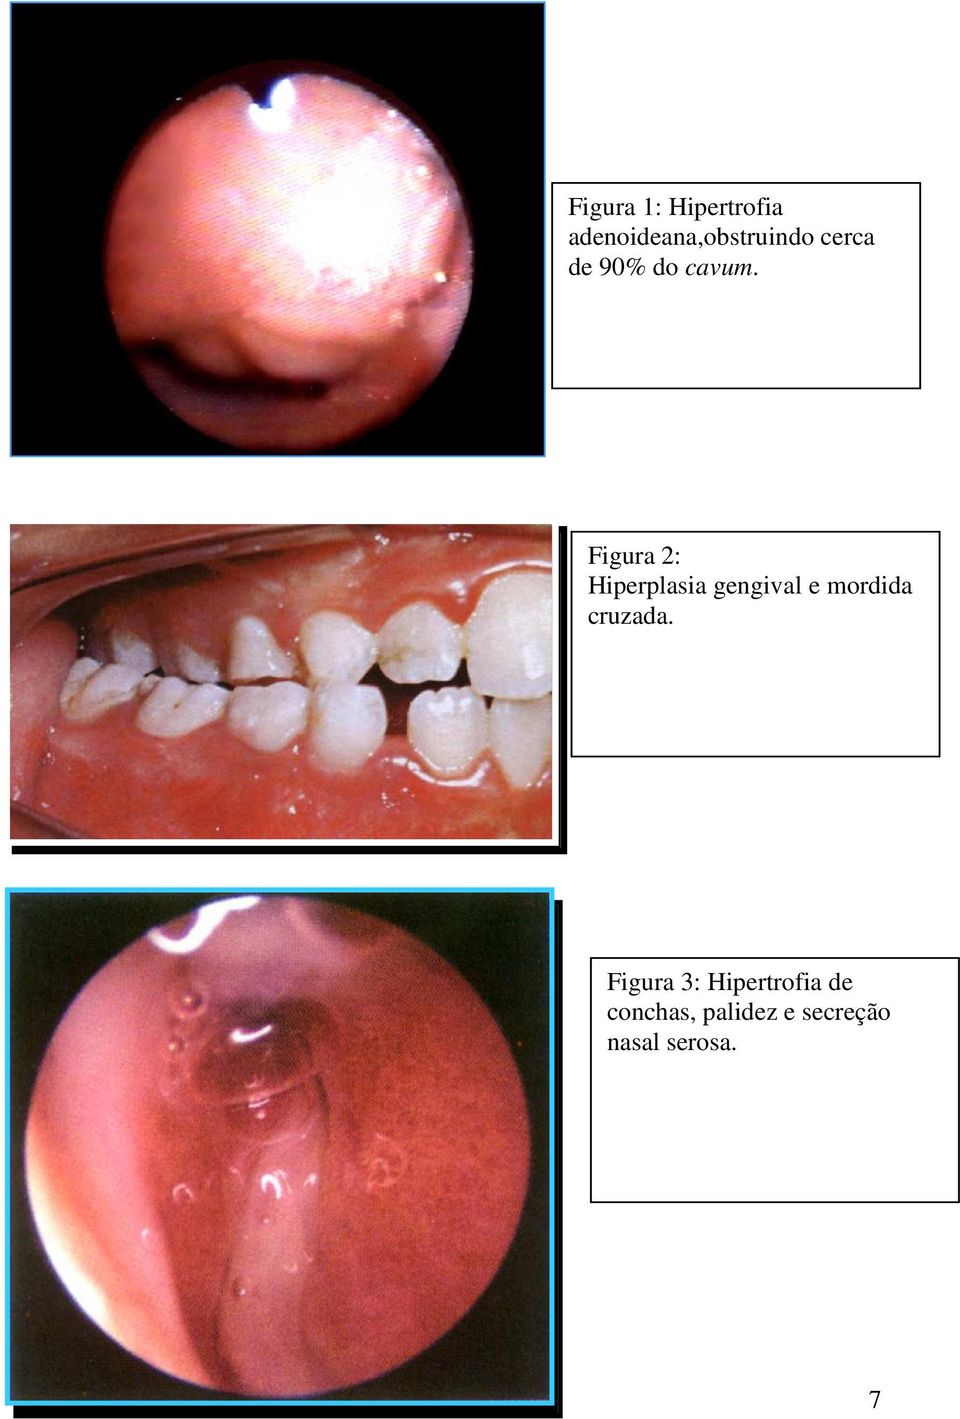 Figura 2: Hiperplasia gengival e mordida